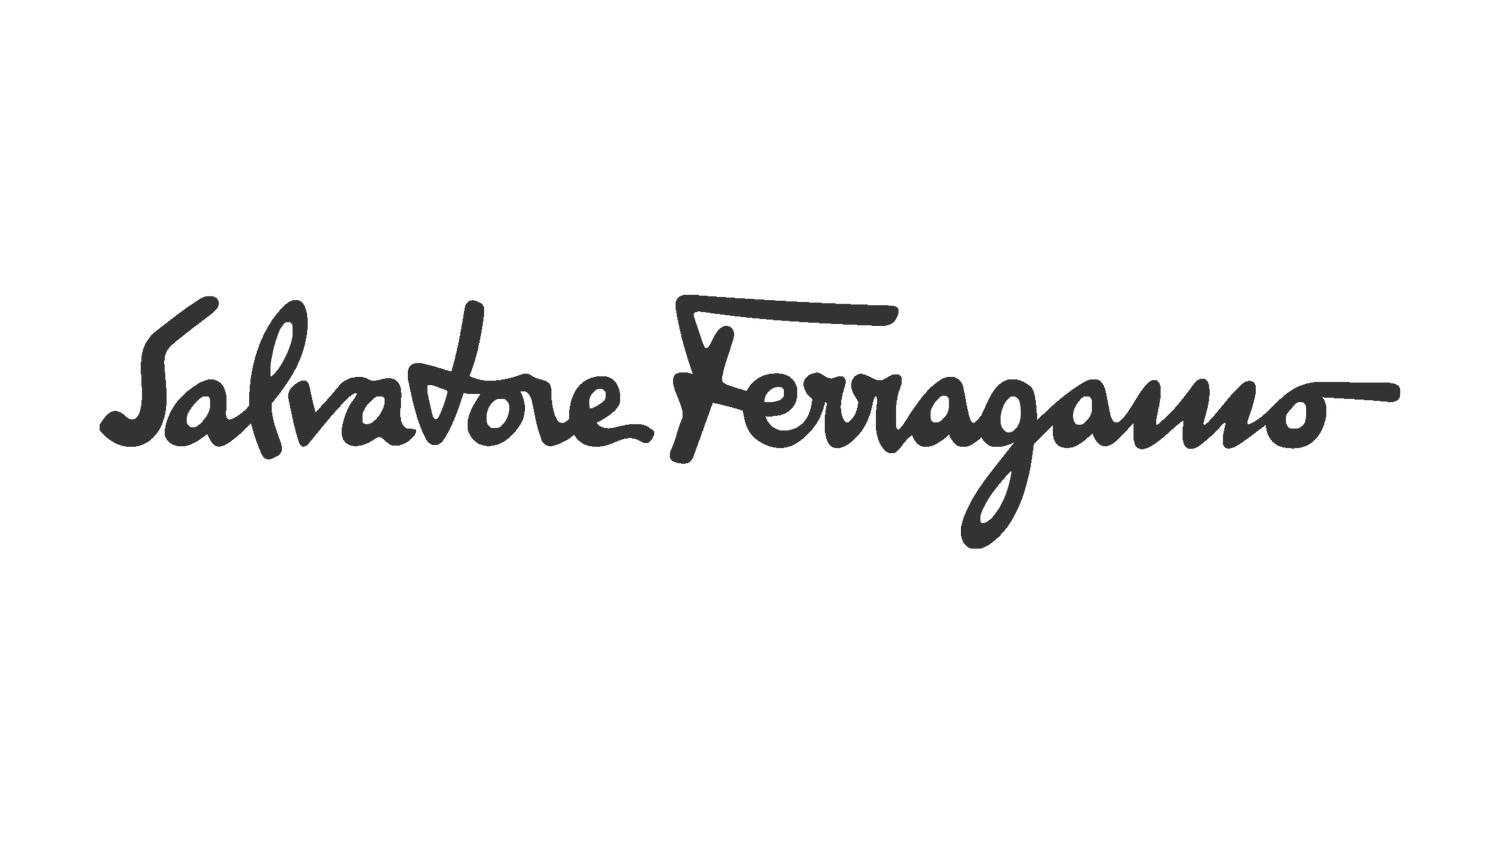 Ferragamo - Kechiq Concept Boutique